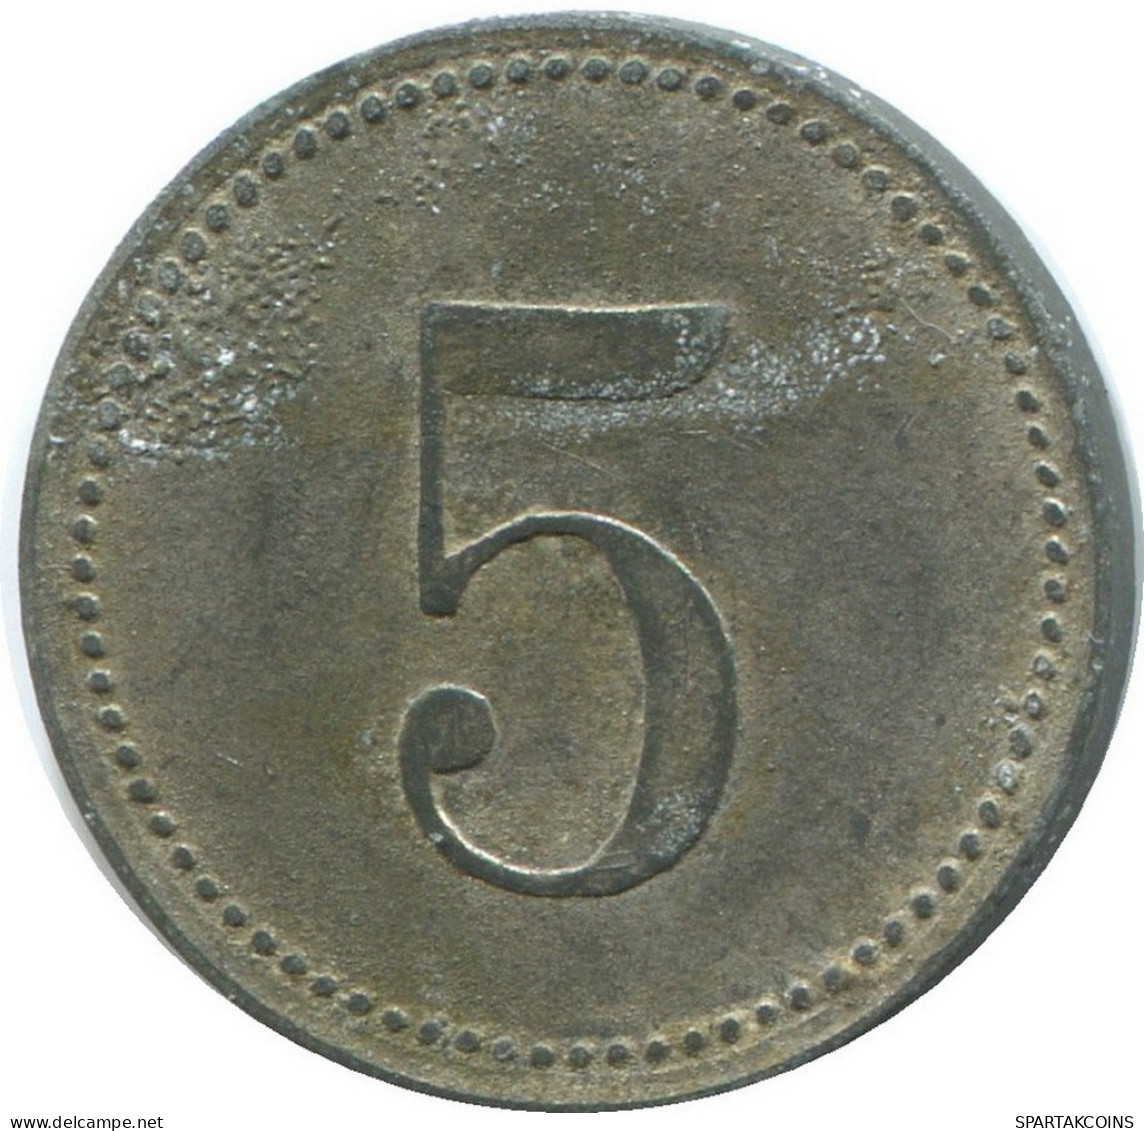 BAVARIA 5 PFENNIG 1917 Notgeld German States #DE10488.6.E.A - 5 Pfennig